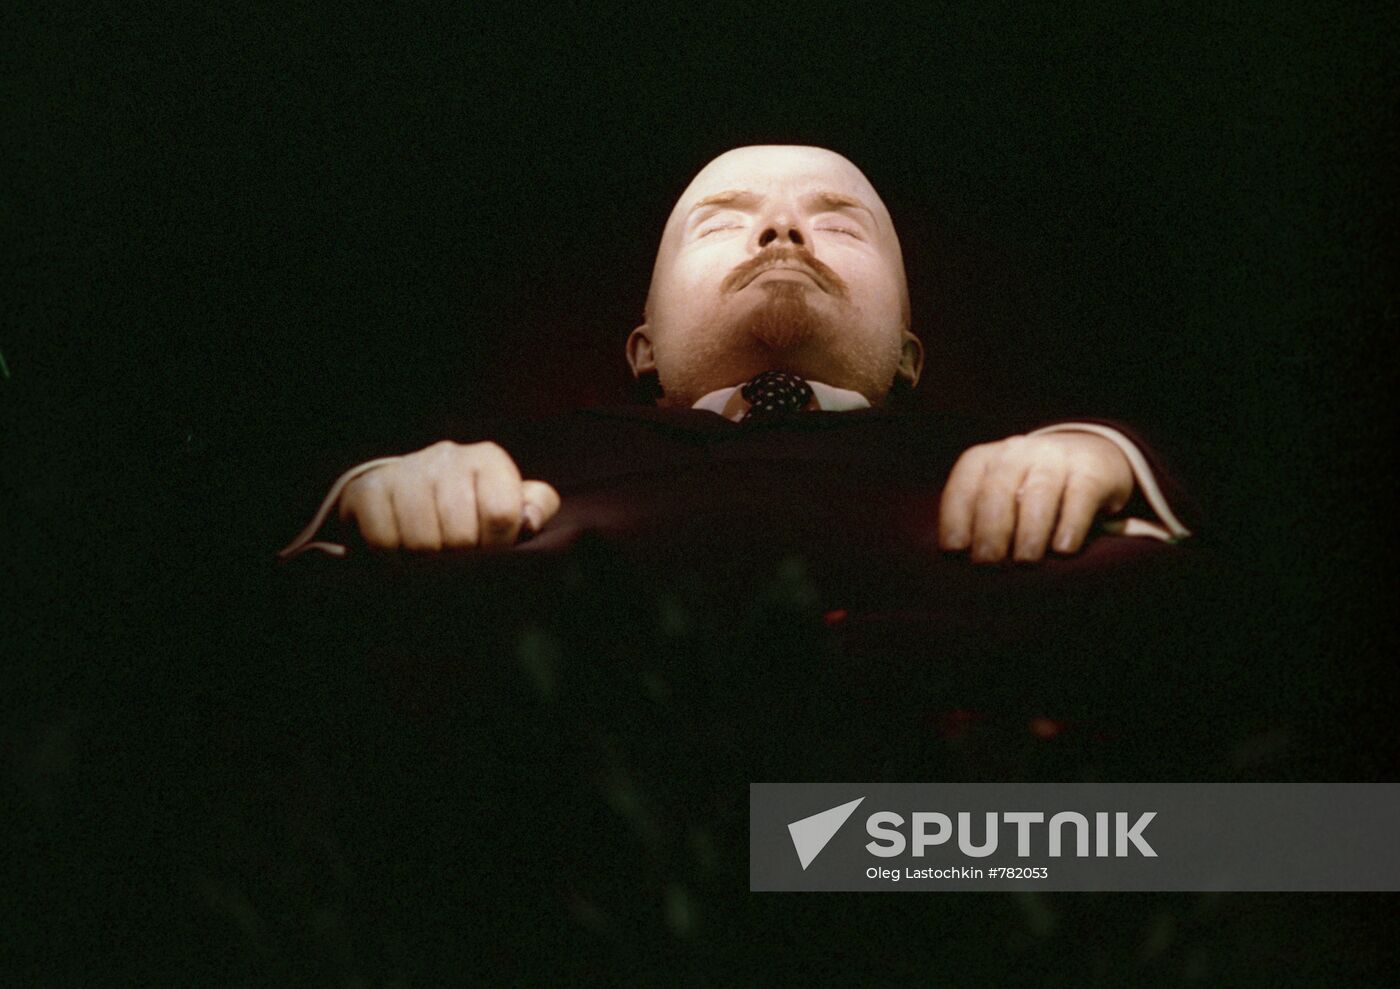 Embalmed body of Vladimir Lenin